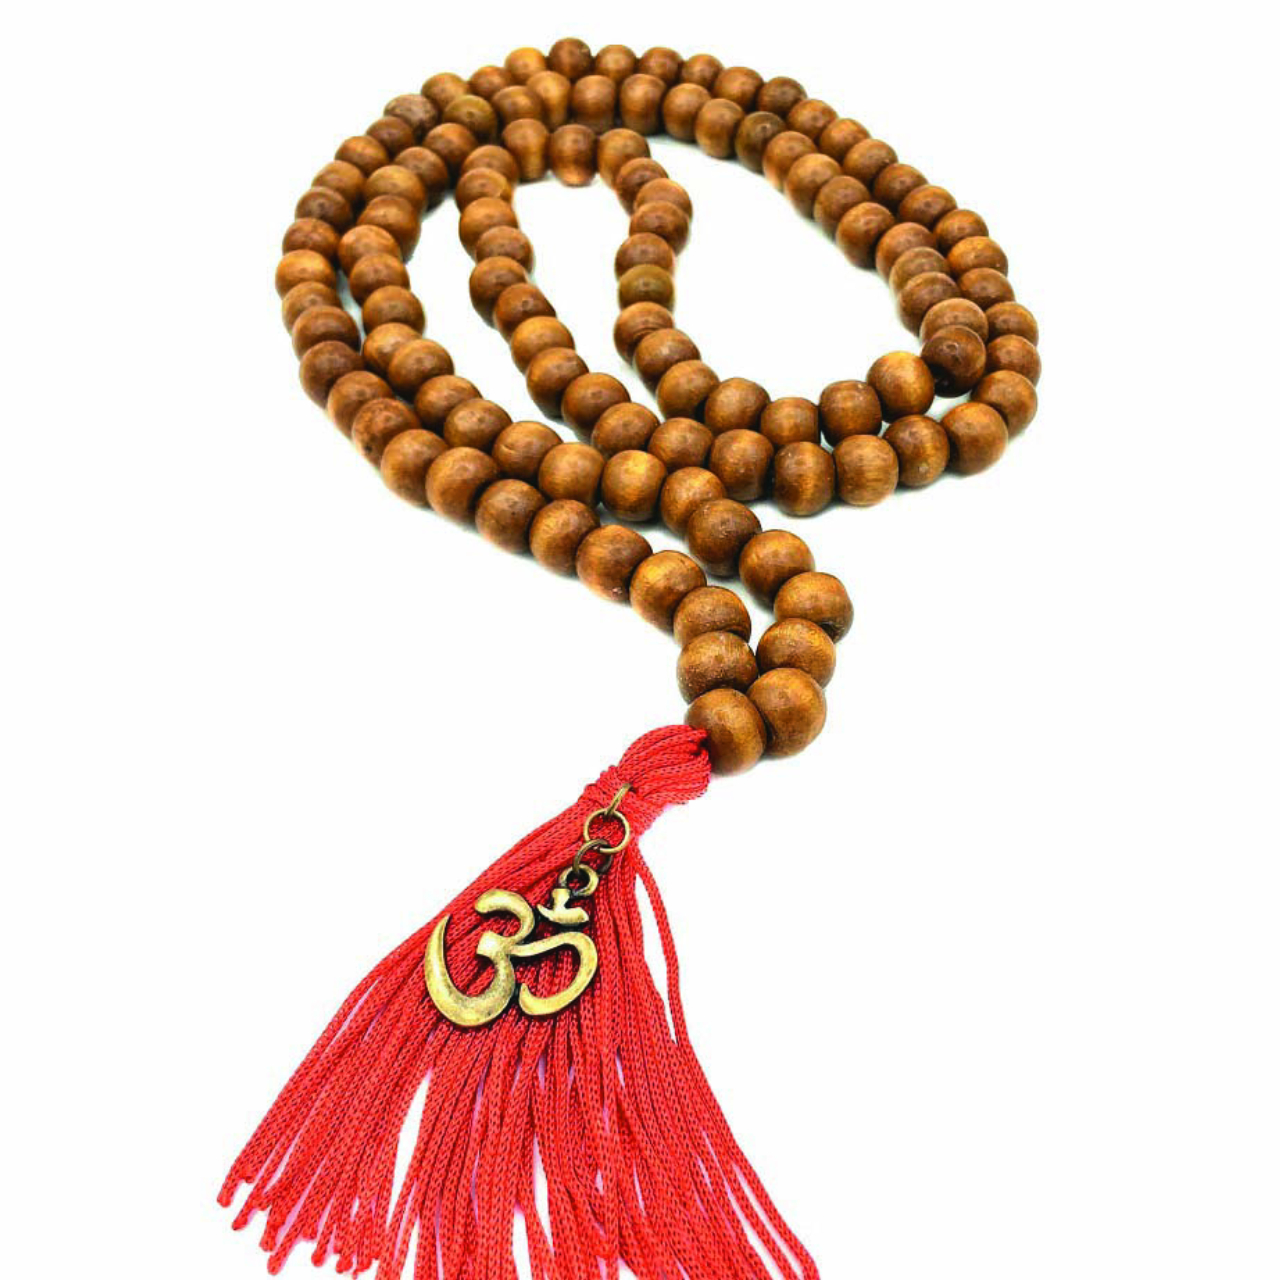 Japamala (instrumento de<br>meditação). R$ 35,90, na<br>Mandala de Luz.